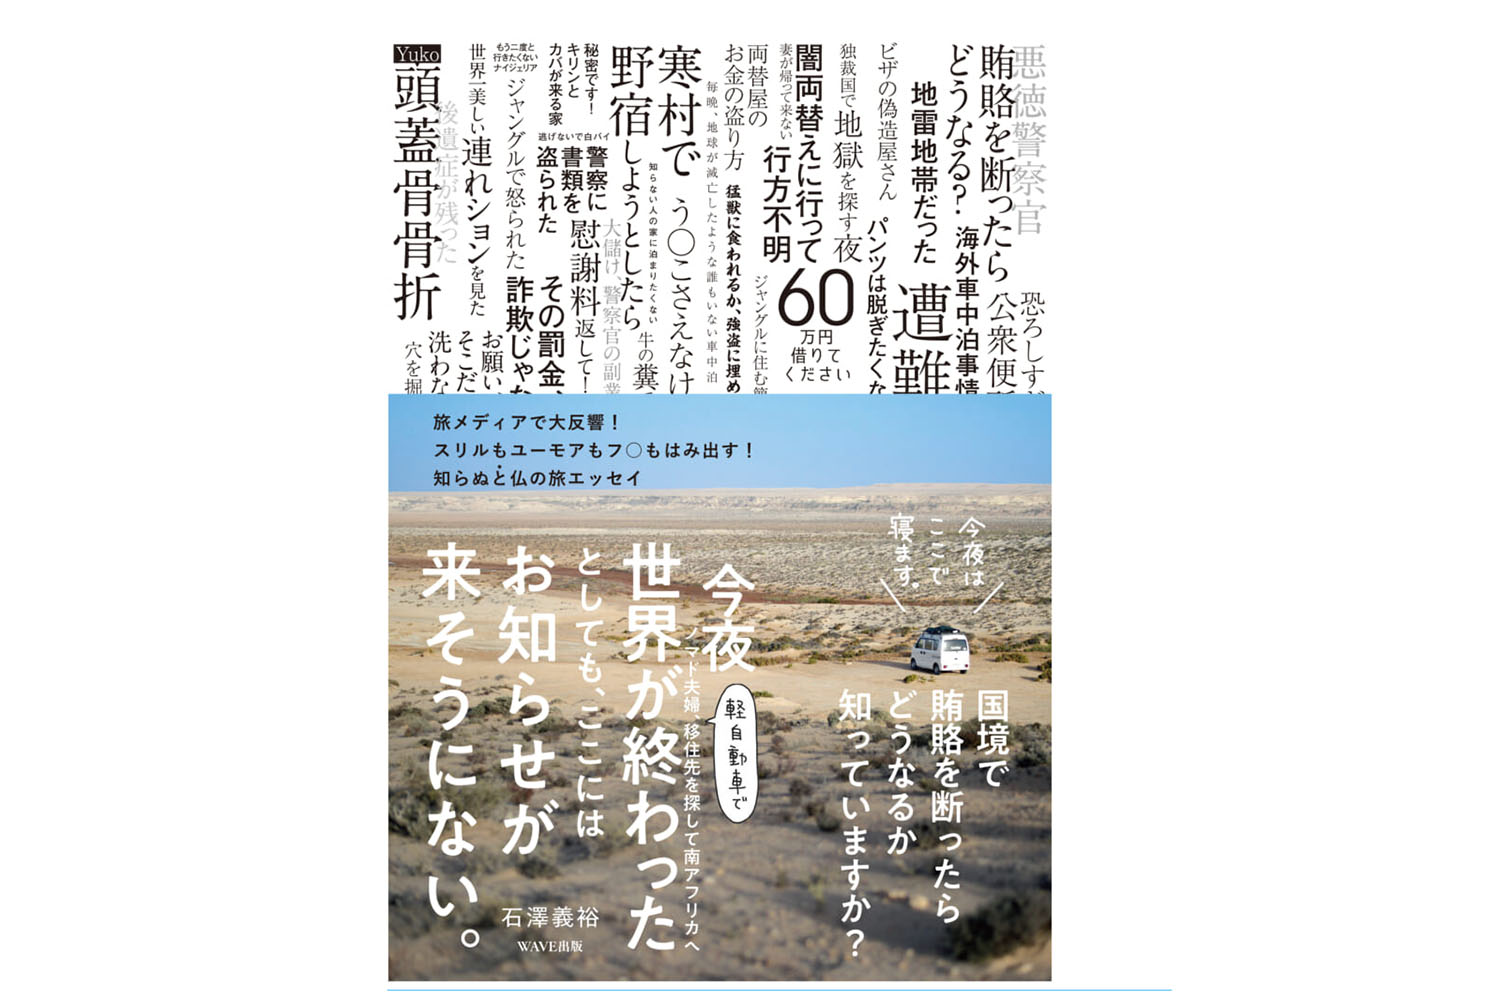 なかなか日本に帰れない!? 　旅の本屋さんが選ぶ「今すぐ冒険に出たくなる本 vol.12」『今夜世界が終わったとしても、ここにはお知らせが来そうにない。』　　